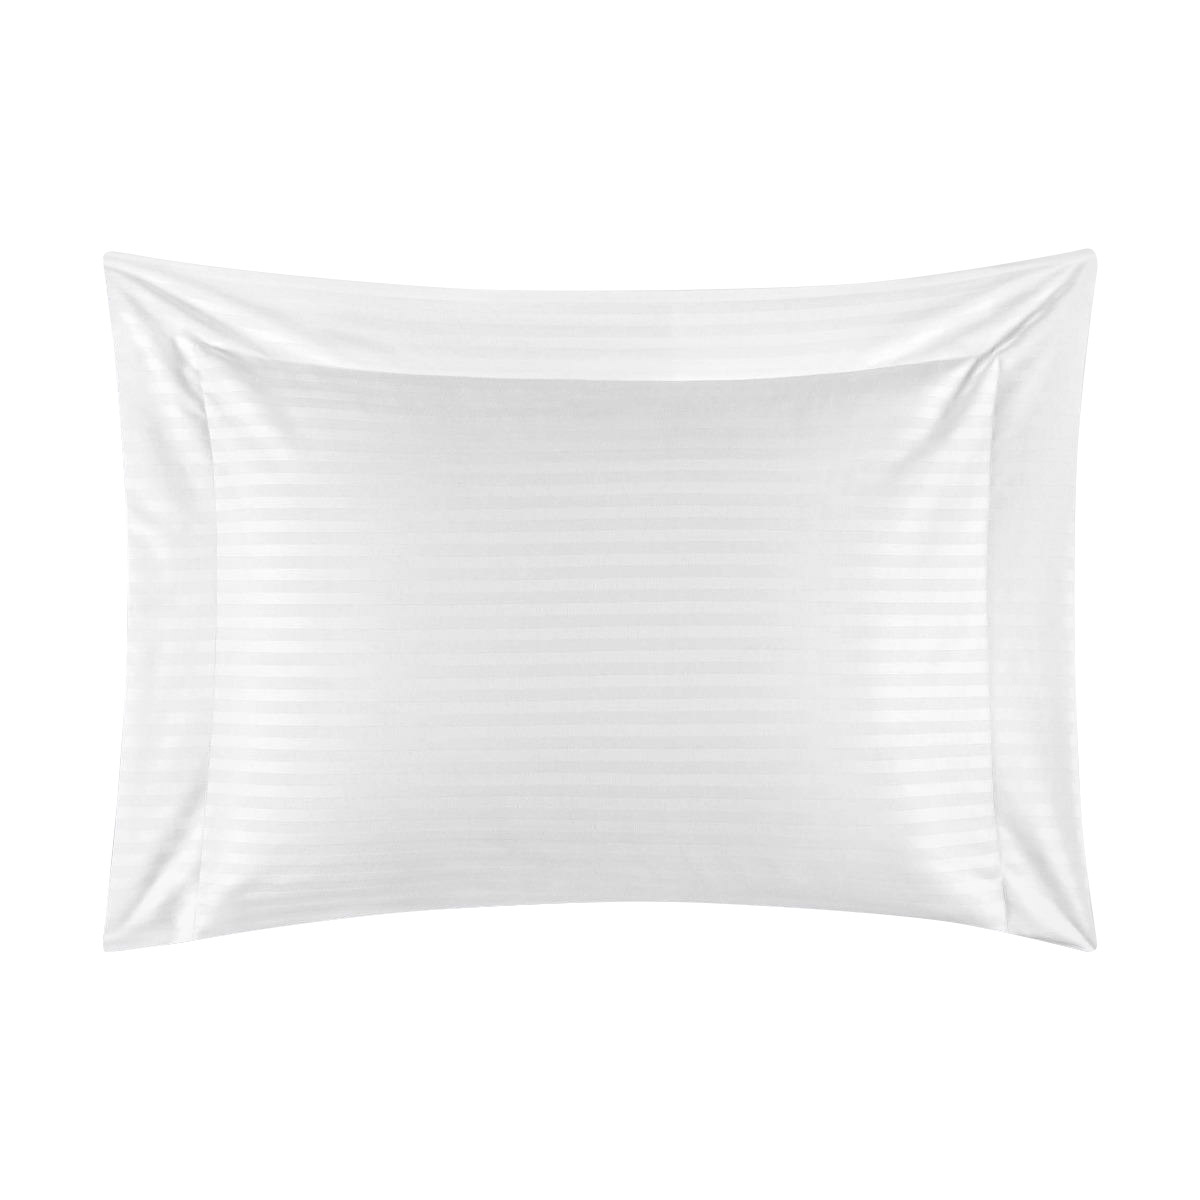 Комплект постельного белья Togas Кирос Двуспальный кинг сайз белый, размер Двуспальный евро - фото 7